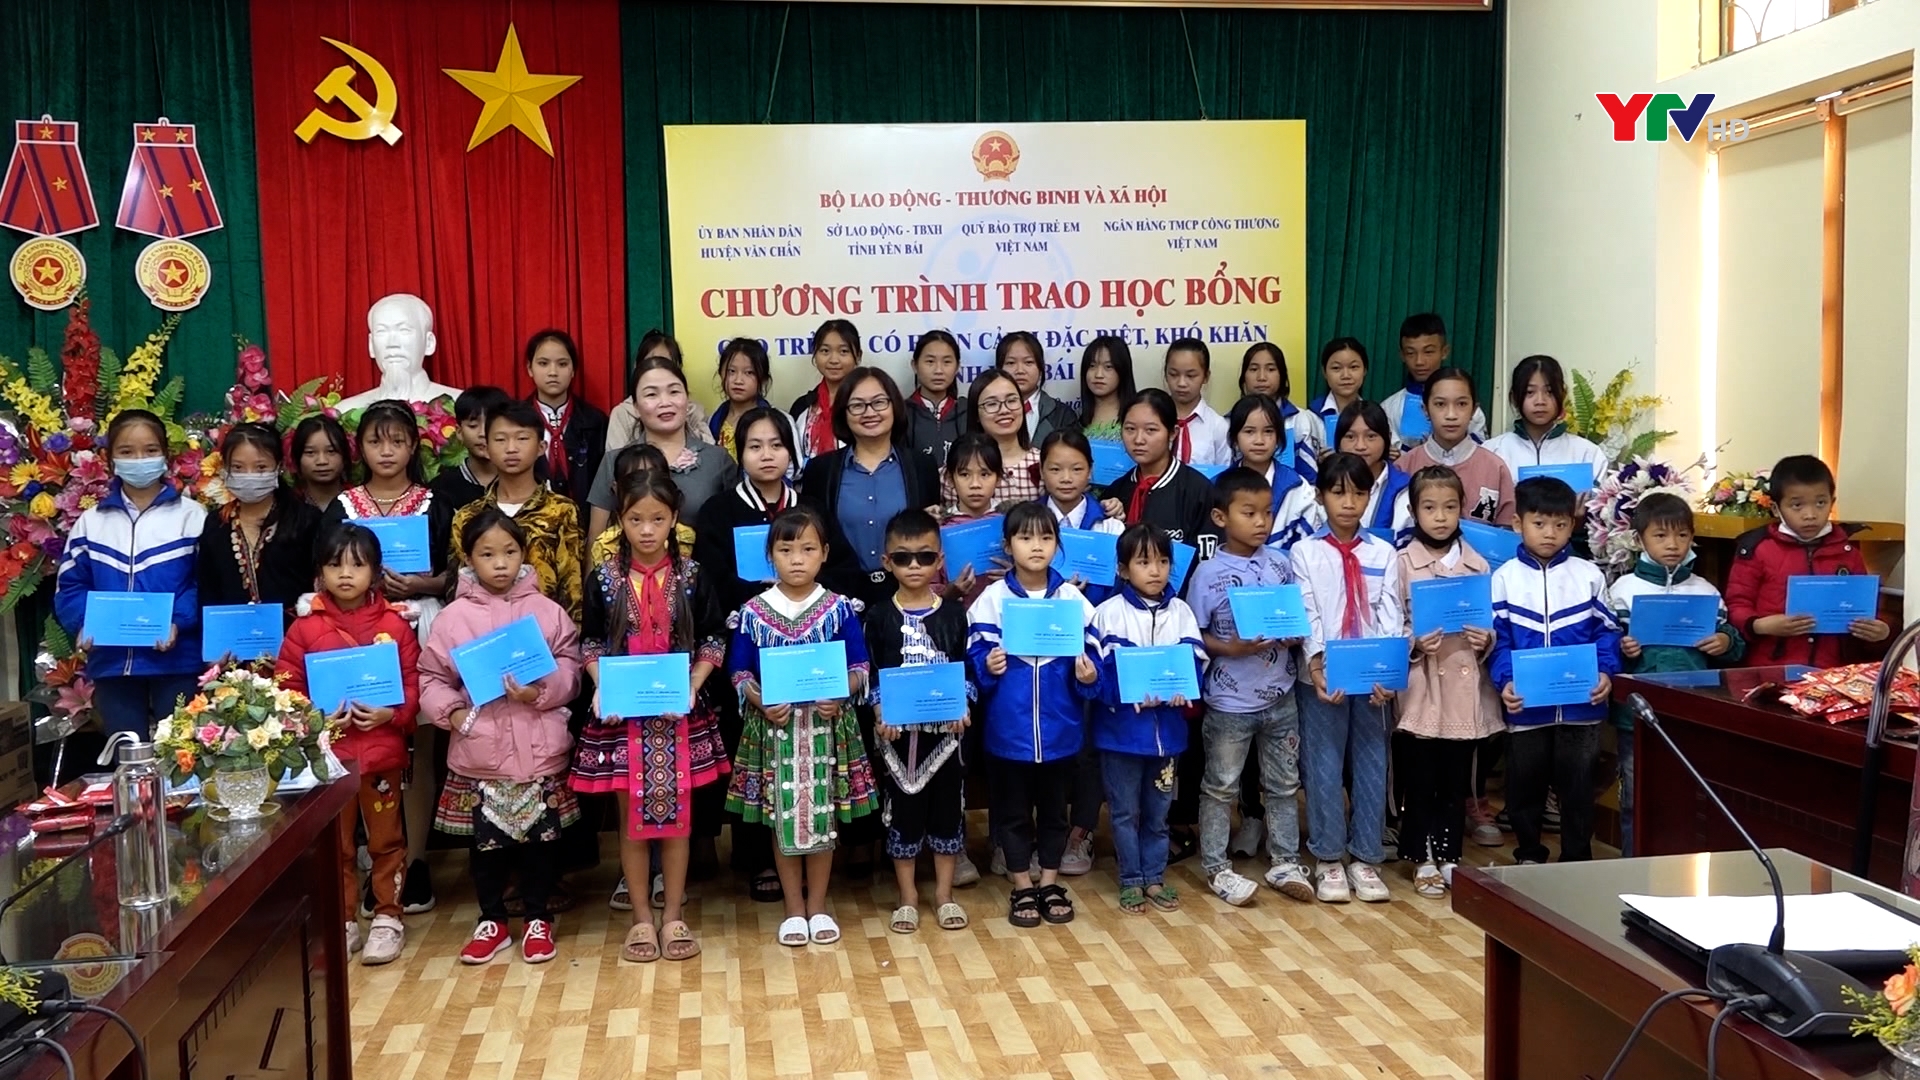 Quỹ Bảo trợ trẻ em Việt Nam trao học bổng cho học sinh tại Yên Bái